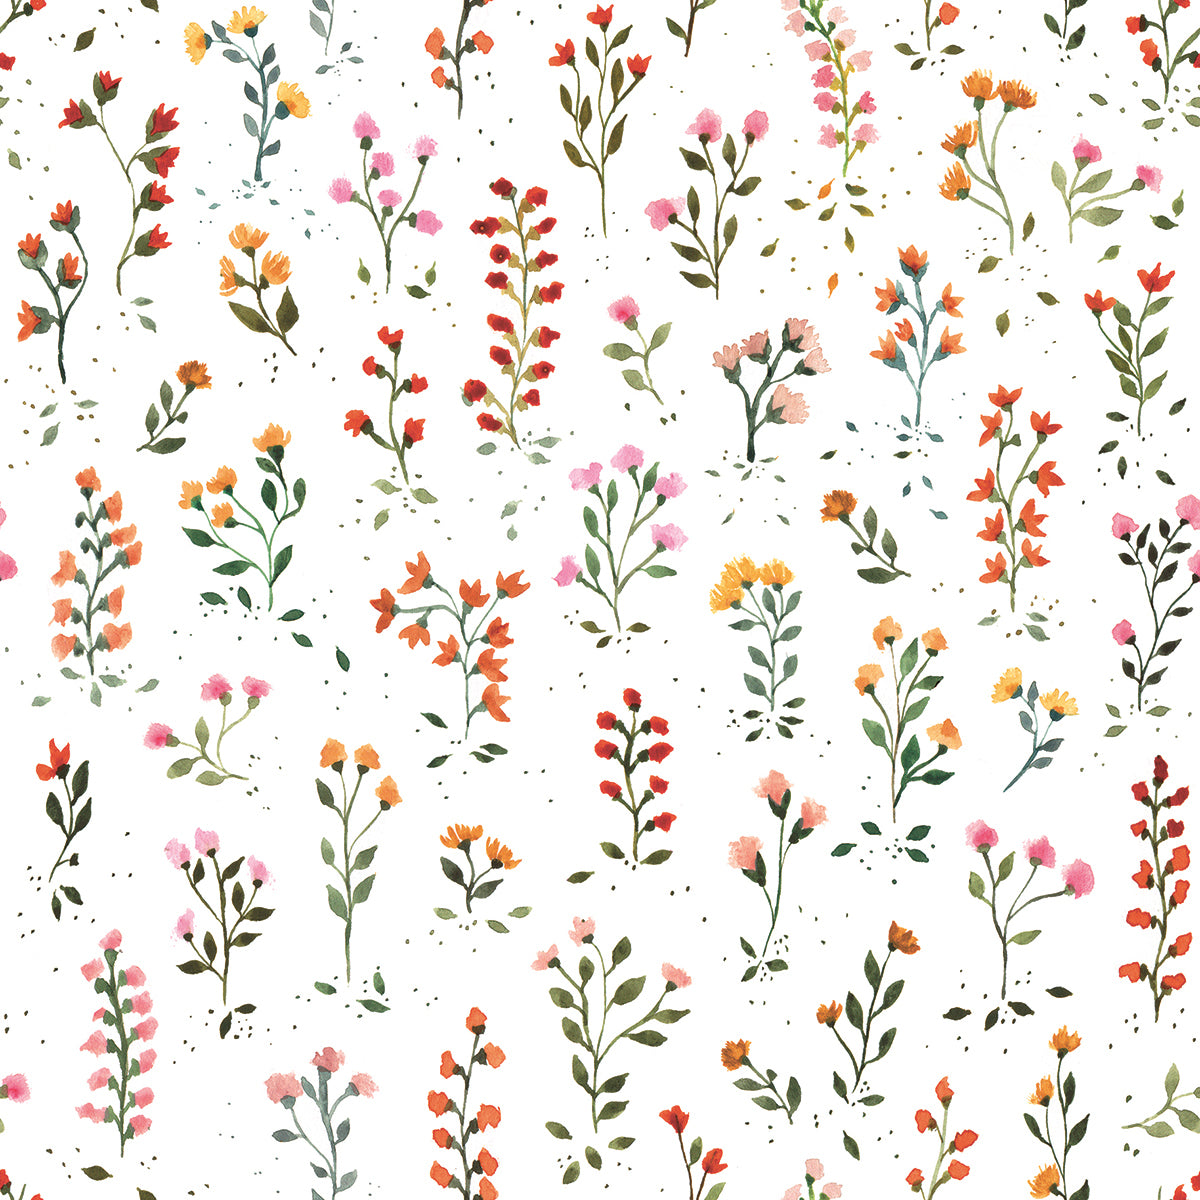 cute flower wallpaper backgrounds